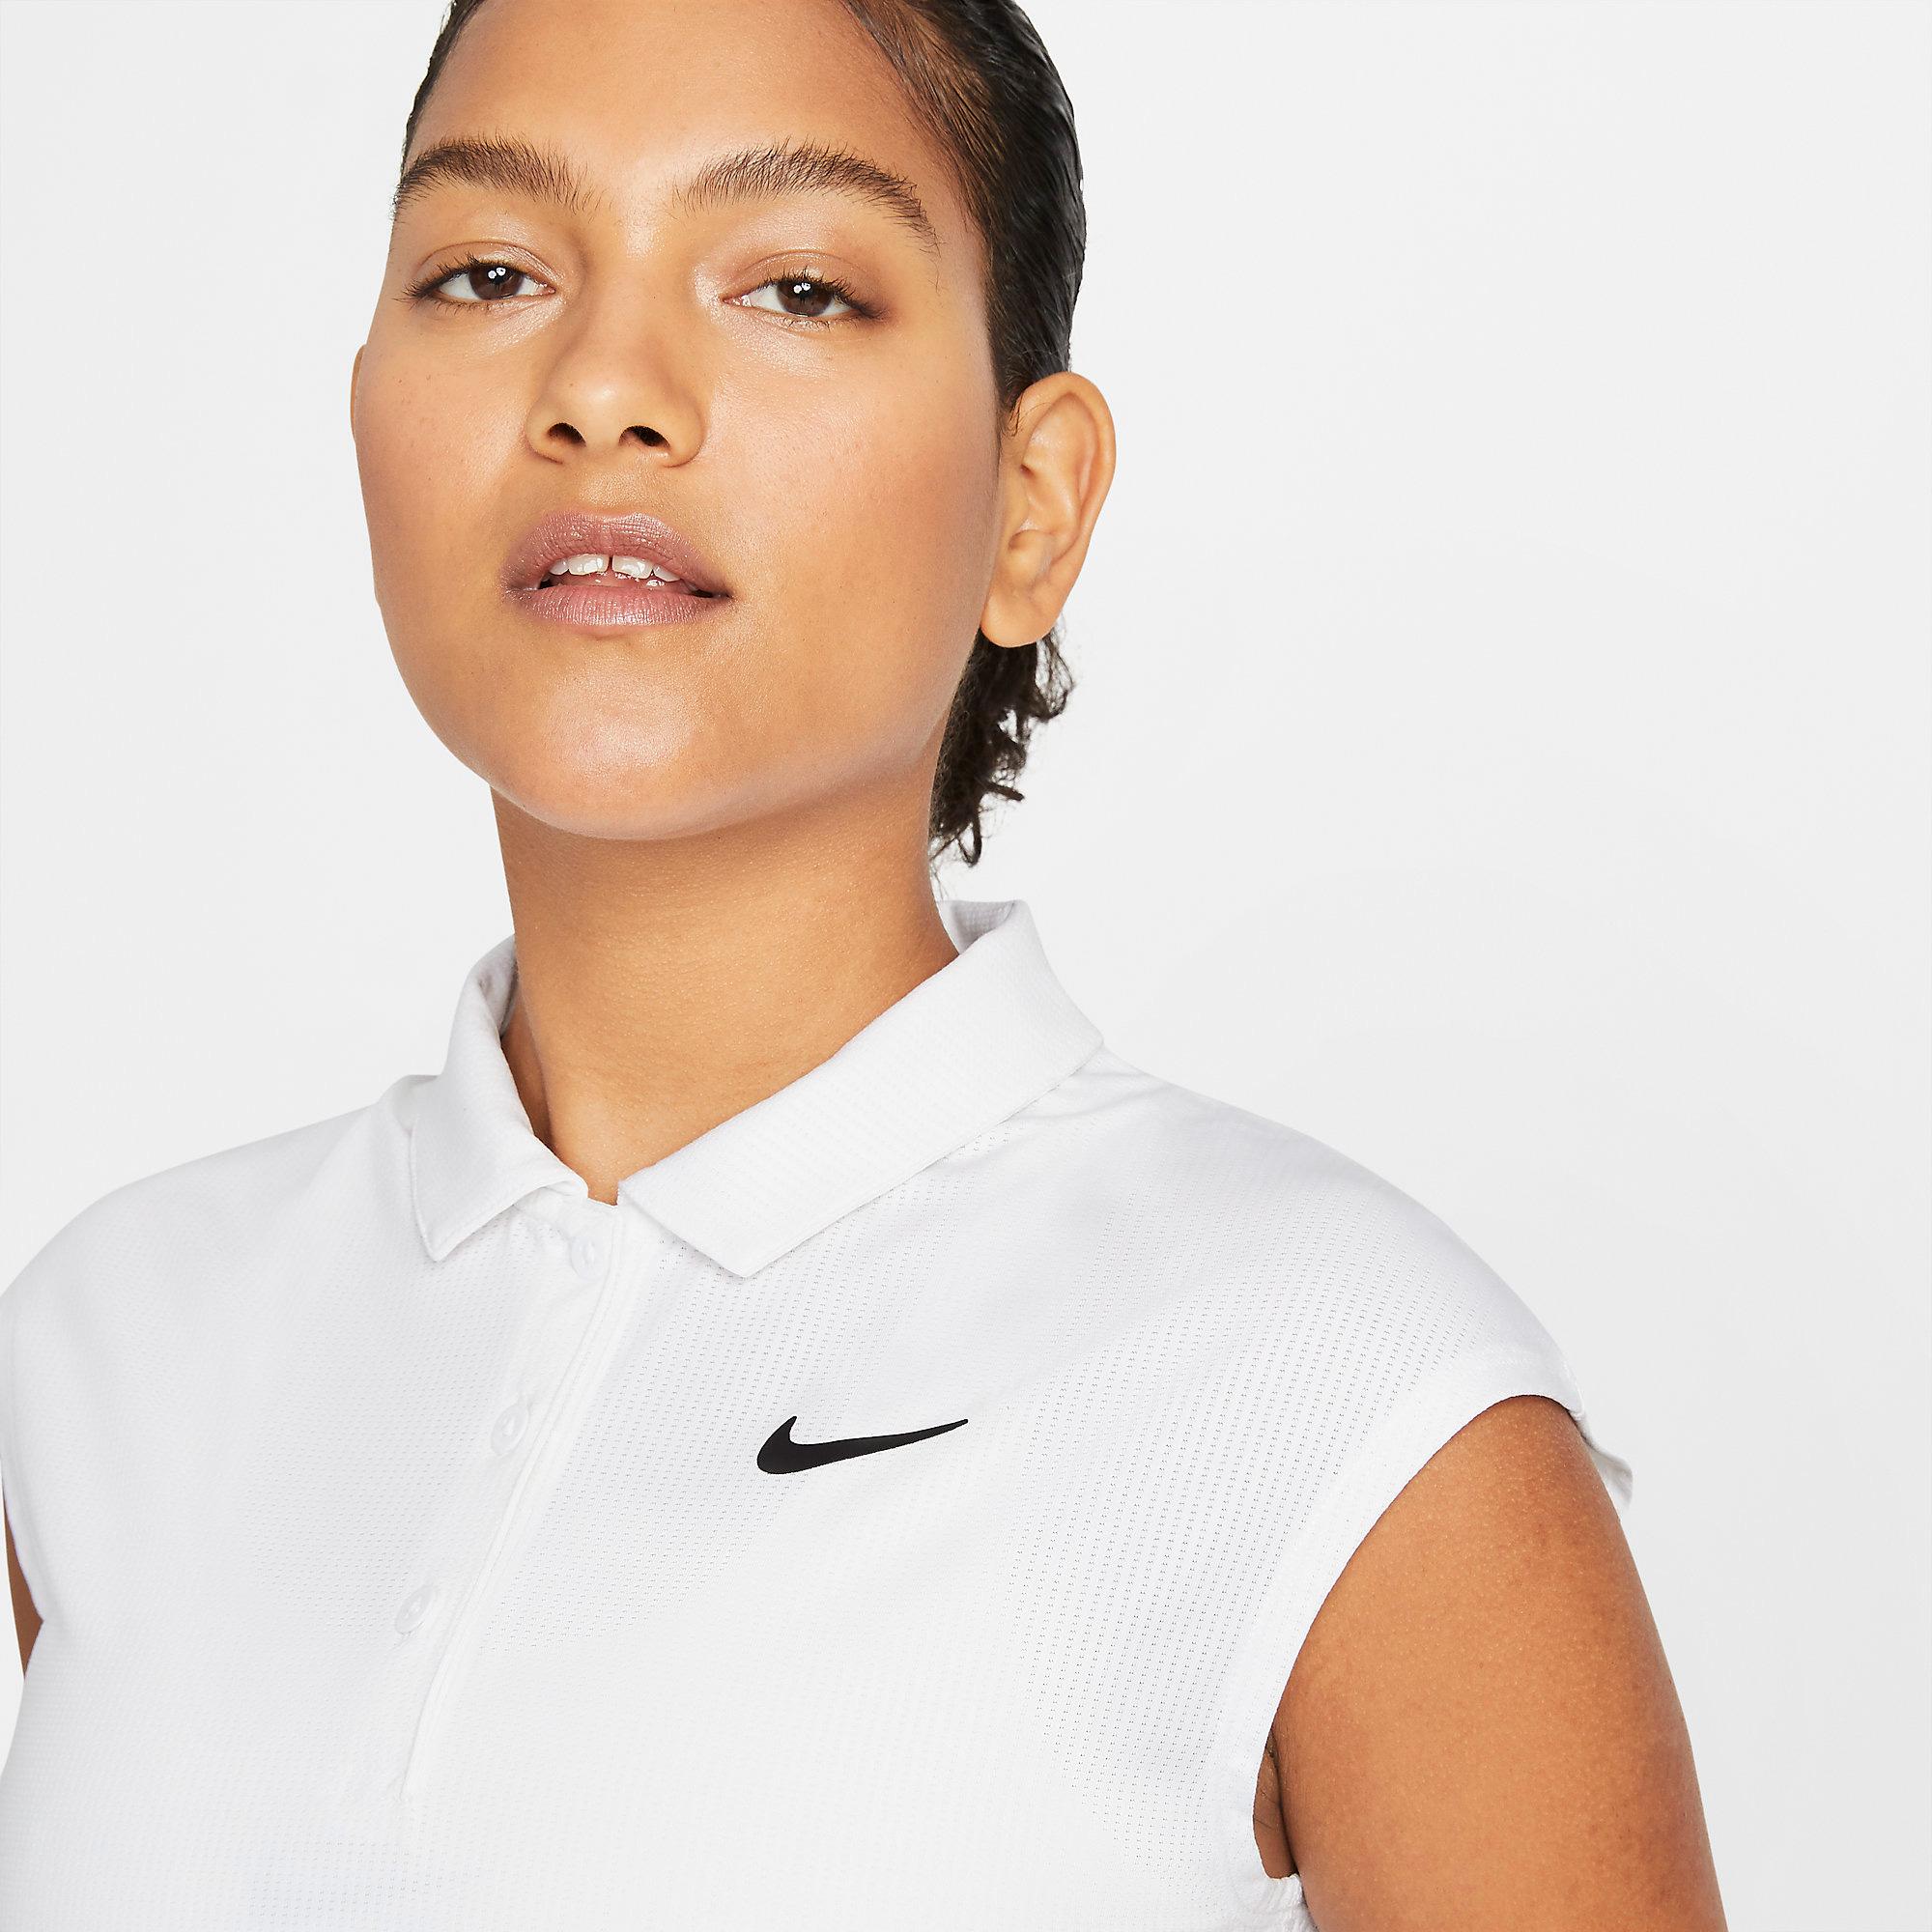 Nike Womens Victory Polo - White - Tennisnuts.com